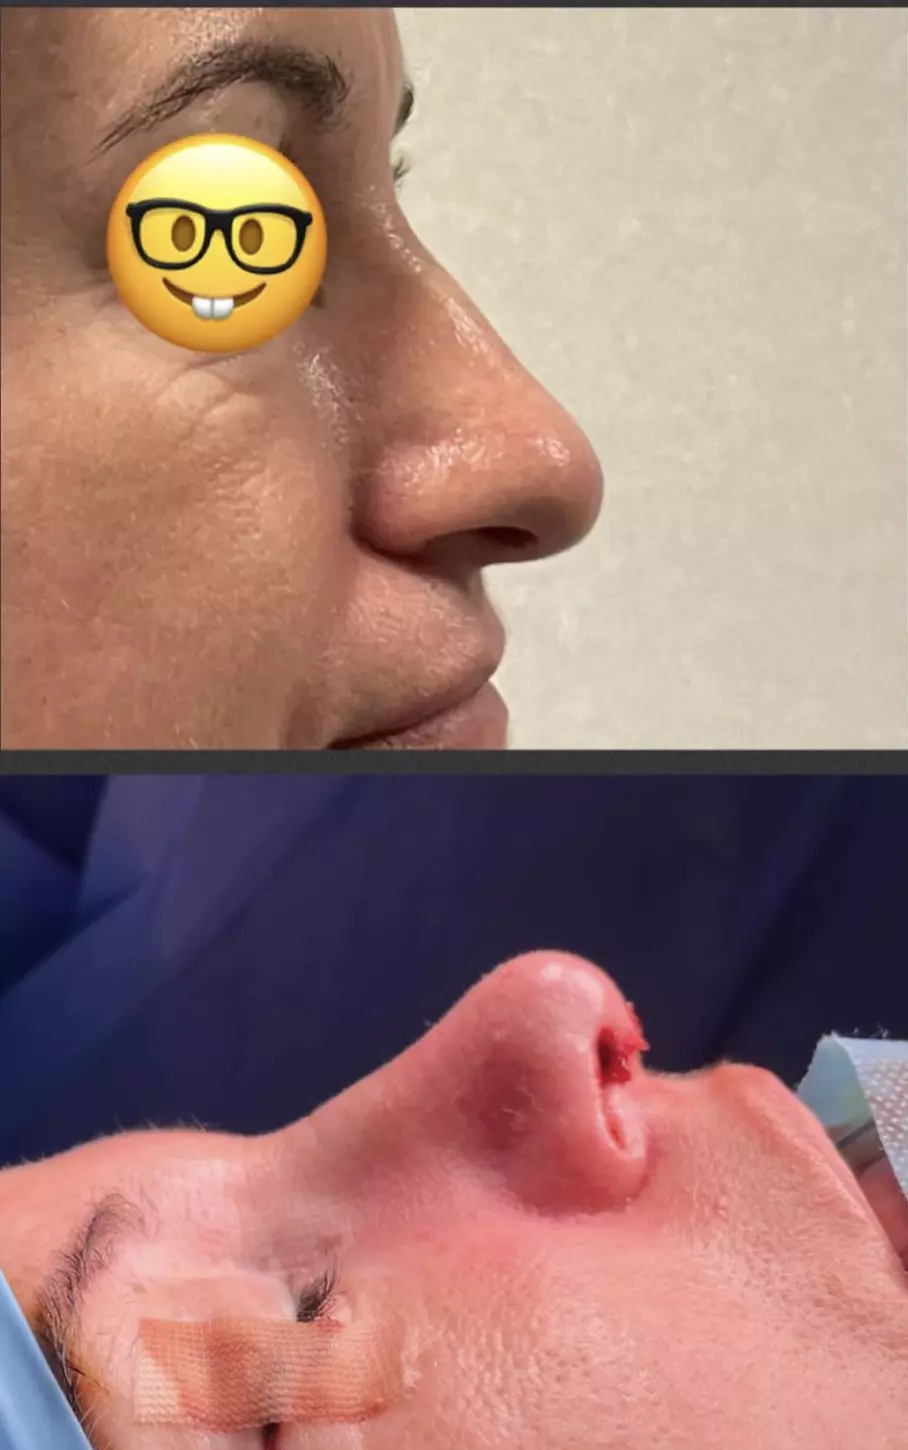 rhinoplastie pointe du nez chez une patiente